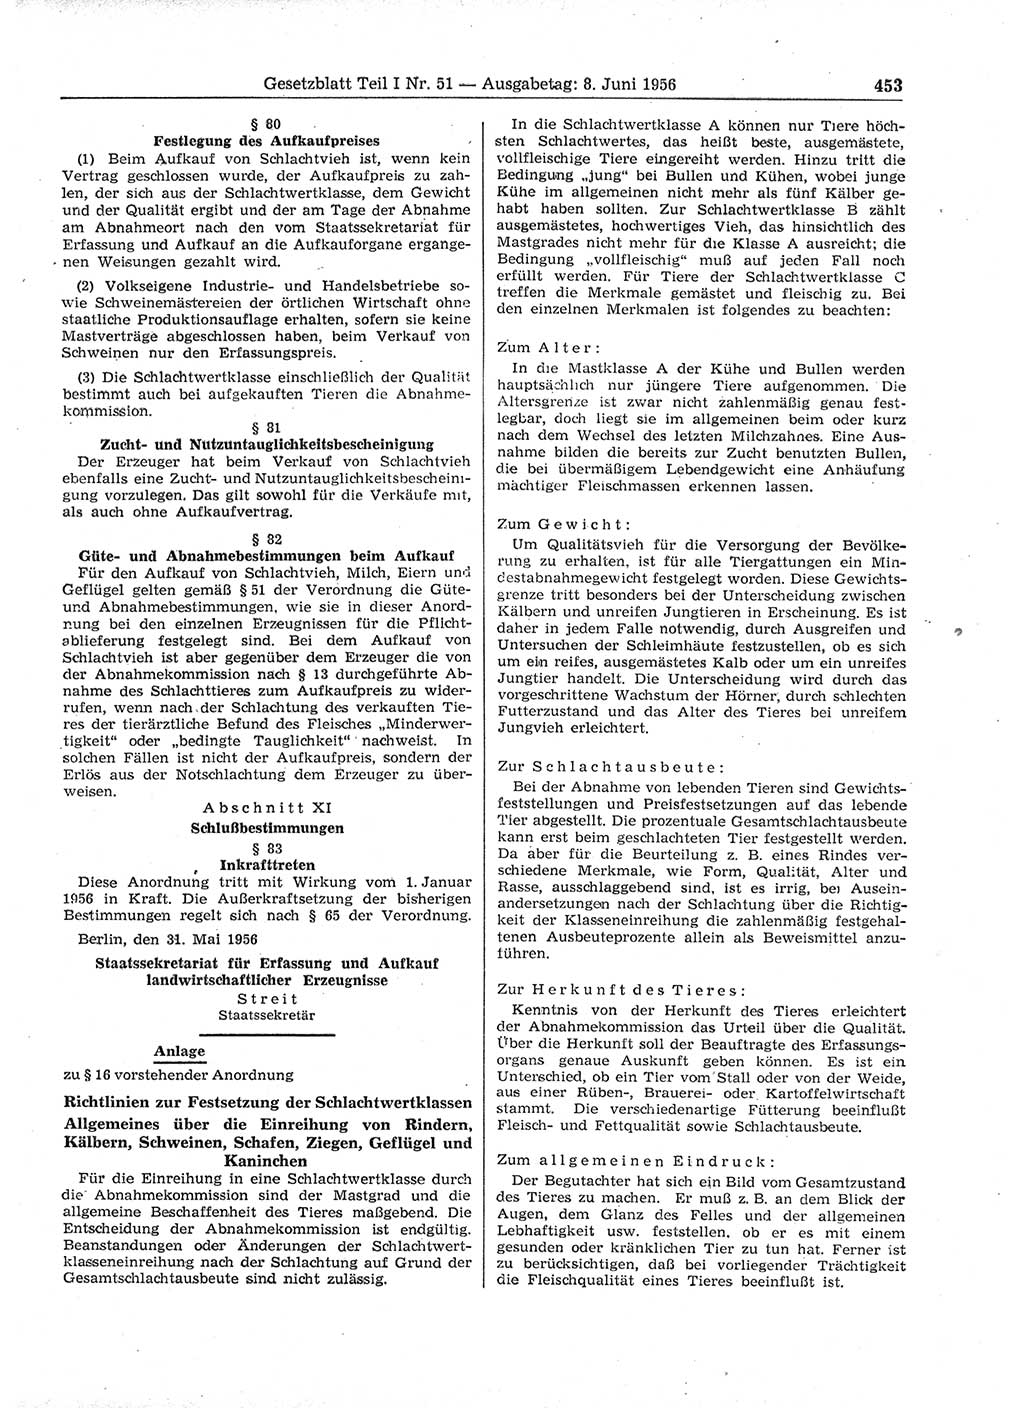 Gesetzblatt (GBl.) der Deutschen Demokratischen Republik (DDR) Teil Ⅰ 1956, Seite 453 (GBl. DDR Ⅰ 1956, S. 453)